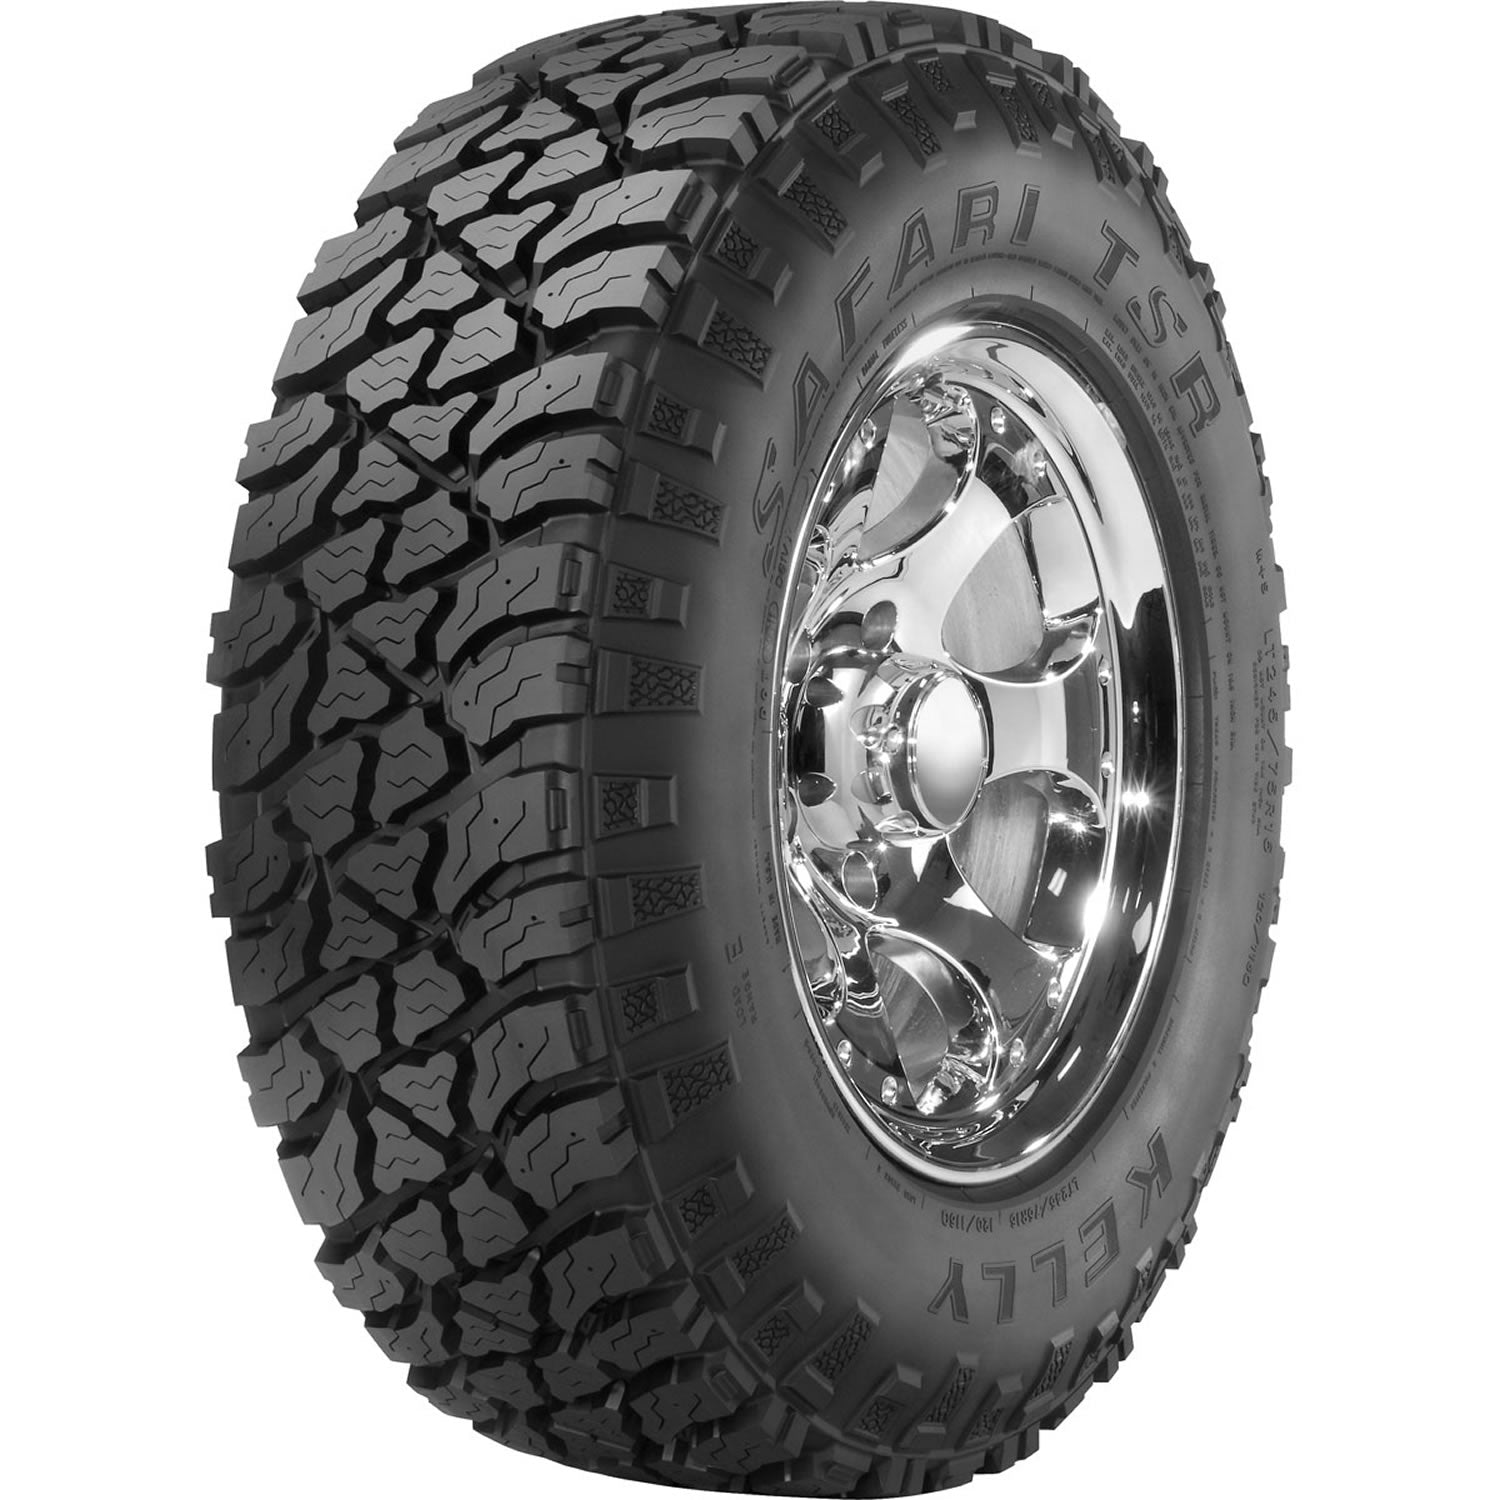 KELLY SAFARI TSR LT245/70R17 (30.6X9.8R 17) Tires